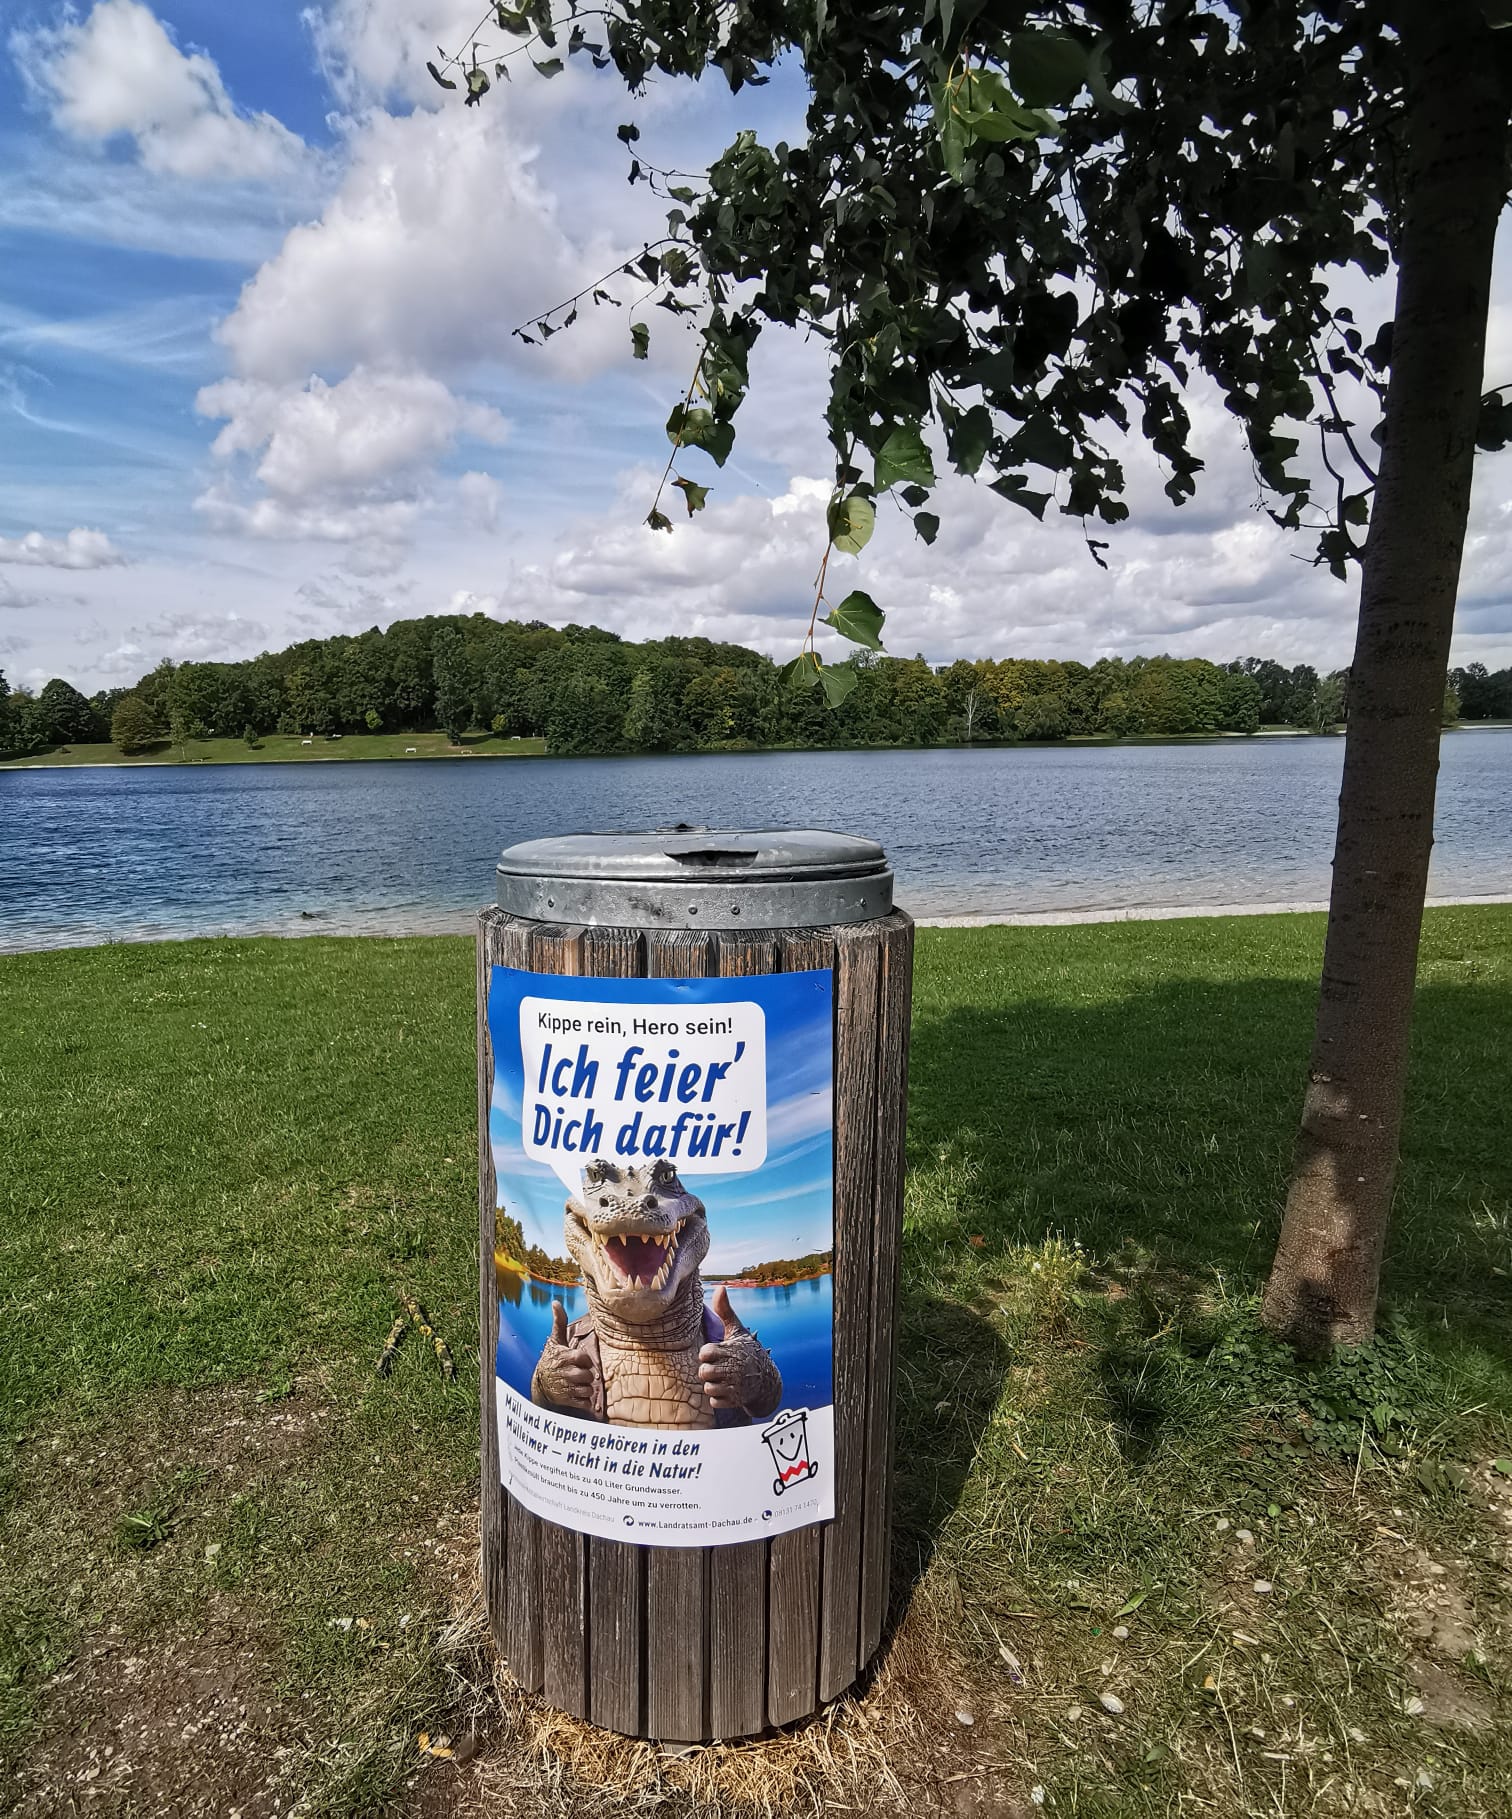 Kippen rein - Hero sein! Kampagne der Kommunalen Abfallwirtschaft am Karlsfelder See